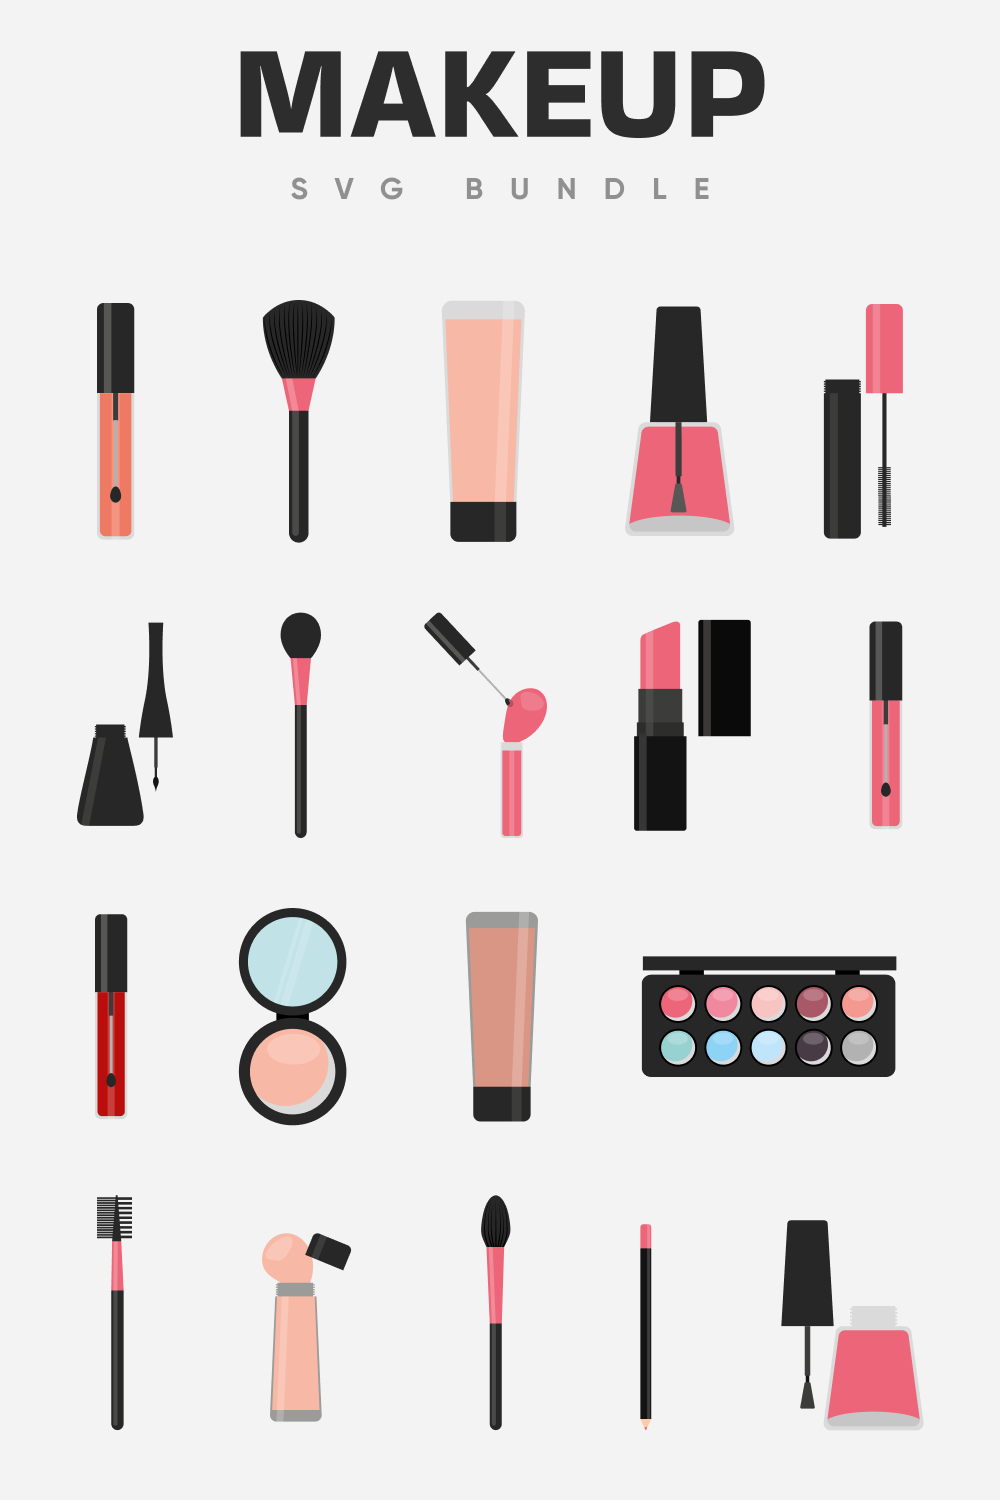 Makeup SVG bundle.